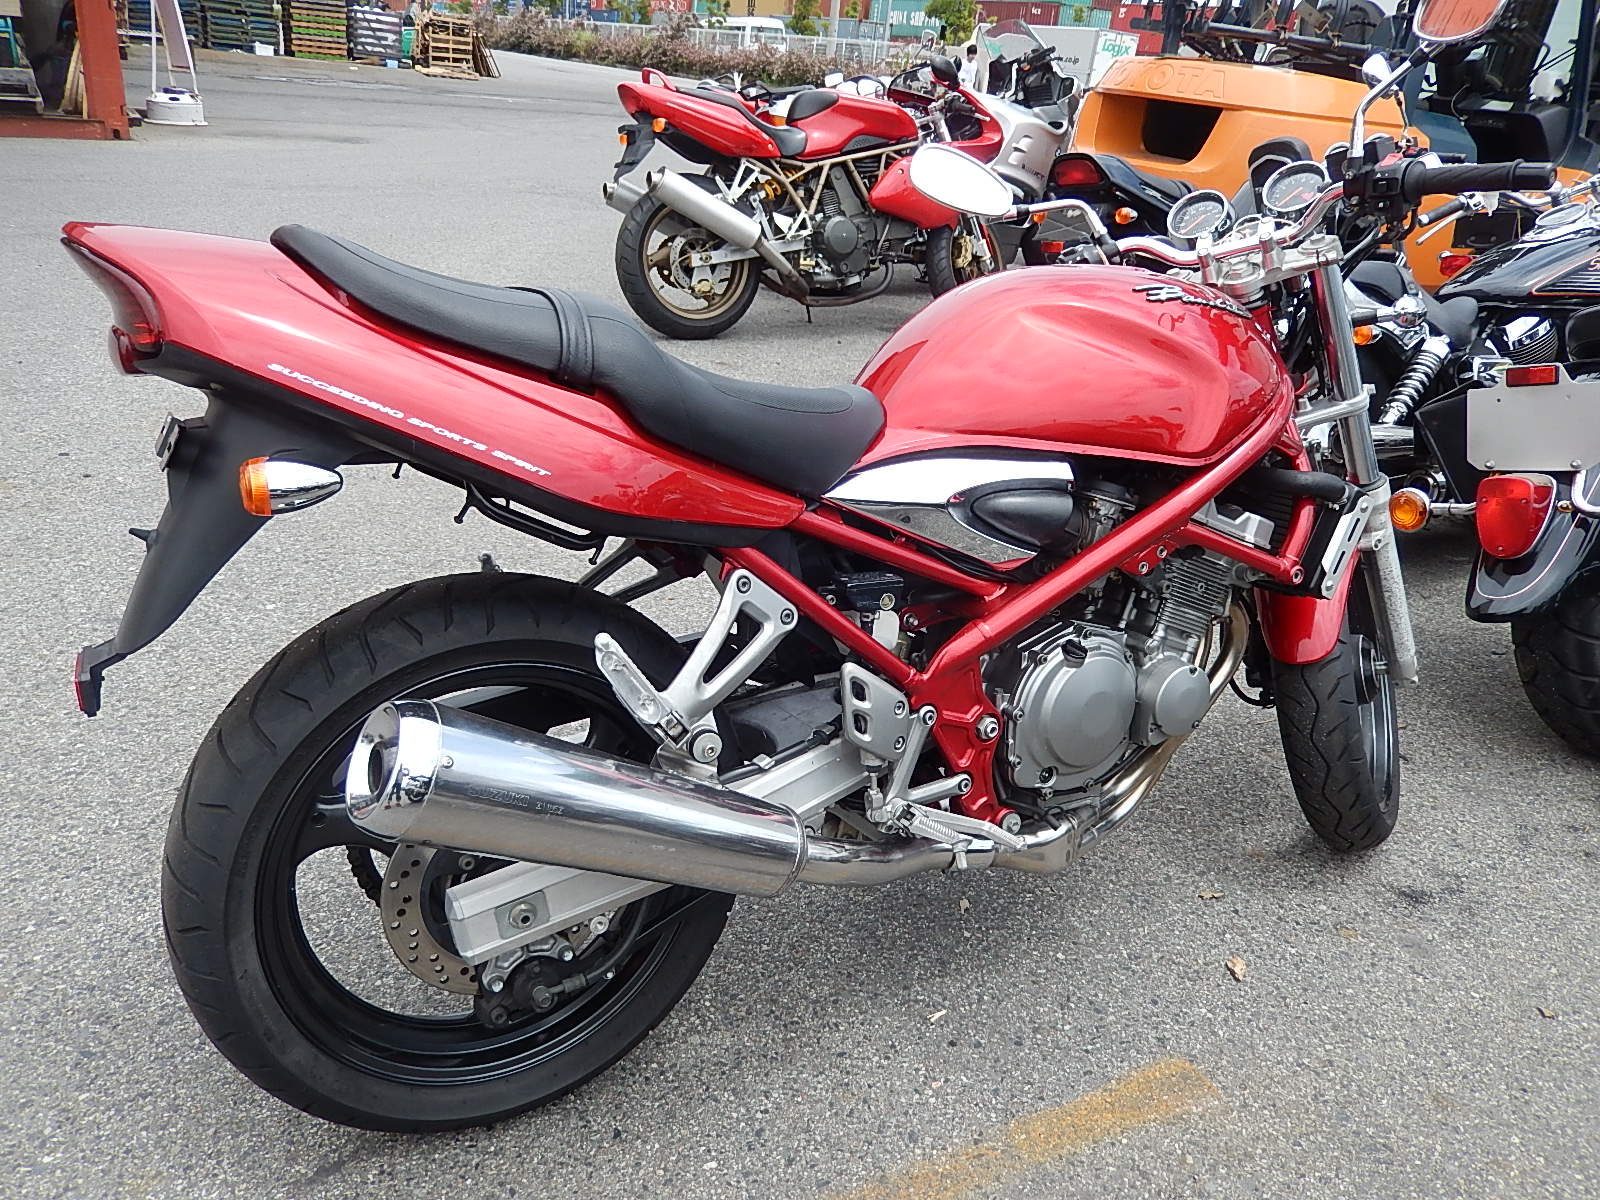 Купить бандит 250. Сузуки бандит 250. Мотоцикл Сузуки бандит 250. Suzuki Bandit 250 2. Сузуки бандит 250 красный.